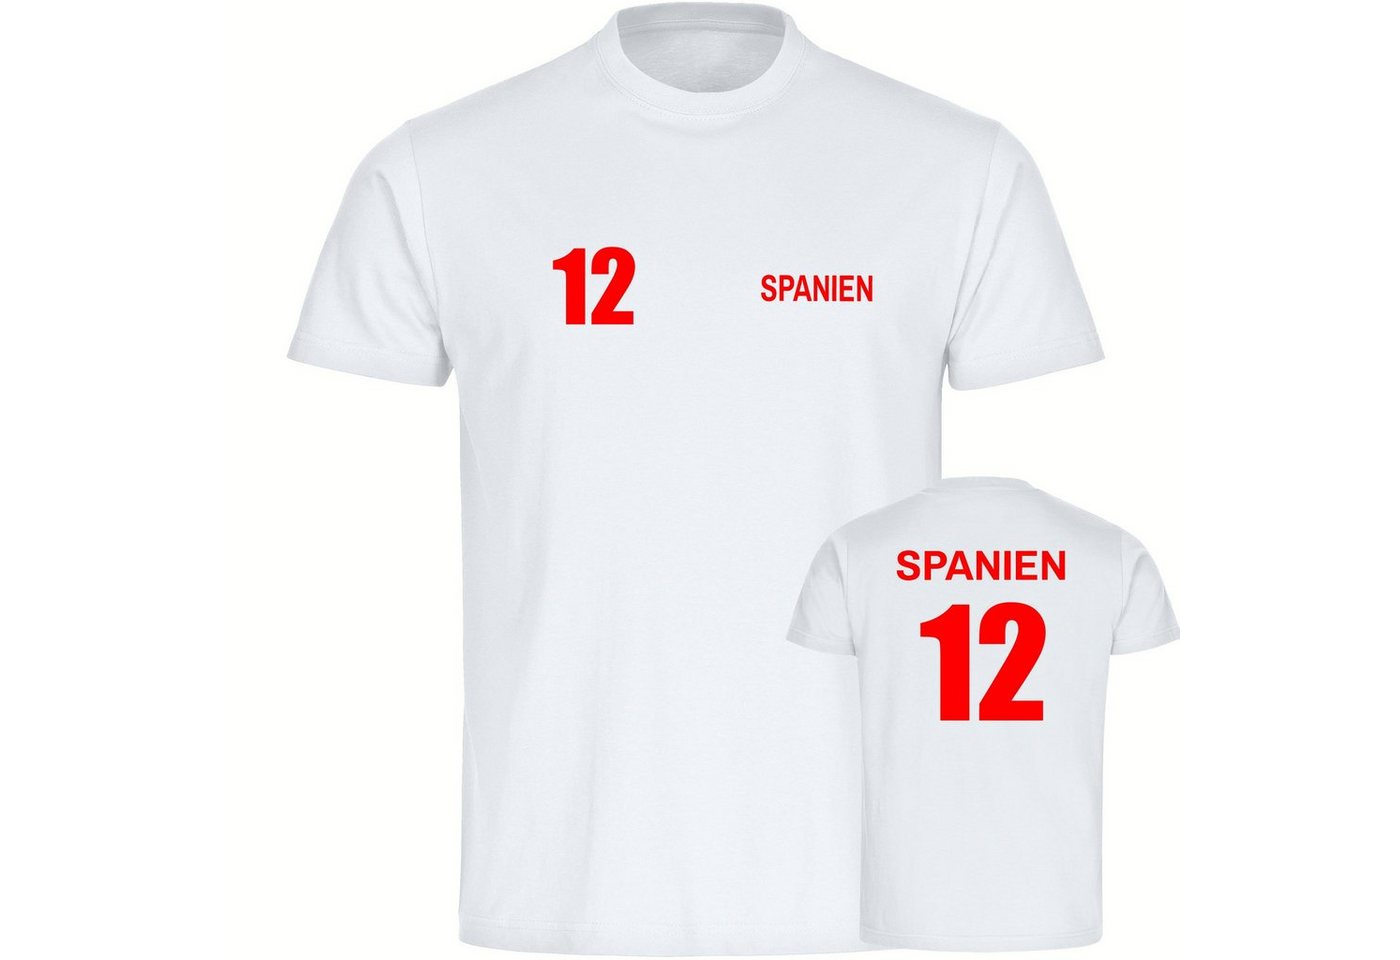 multifanshop T-Shirt Kinder Spanien - Trikot 12 - Boy Girl von multifanshop